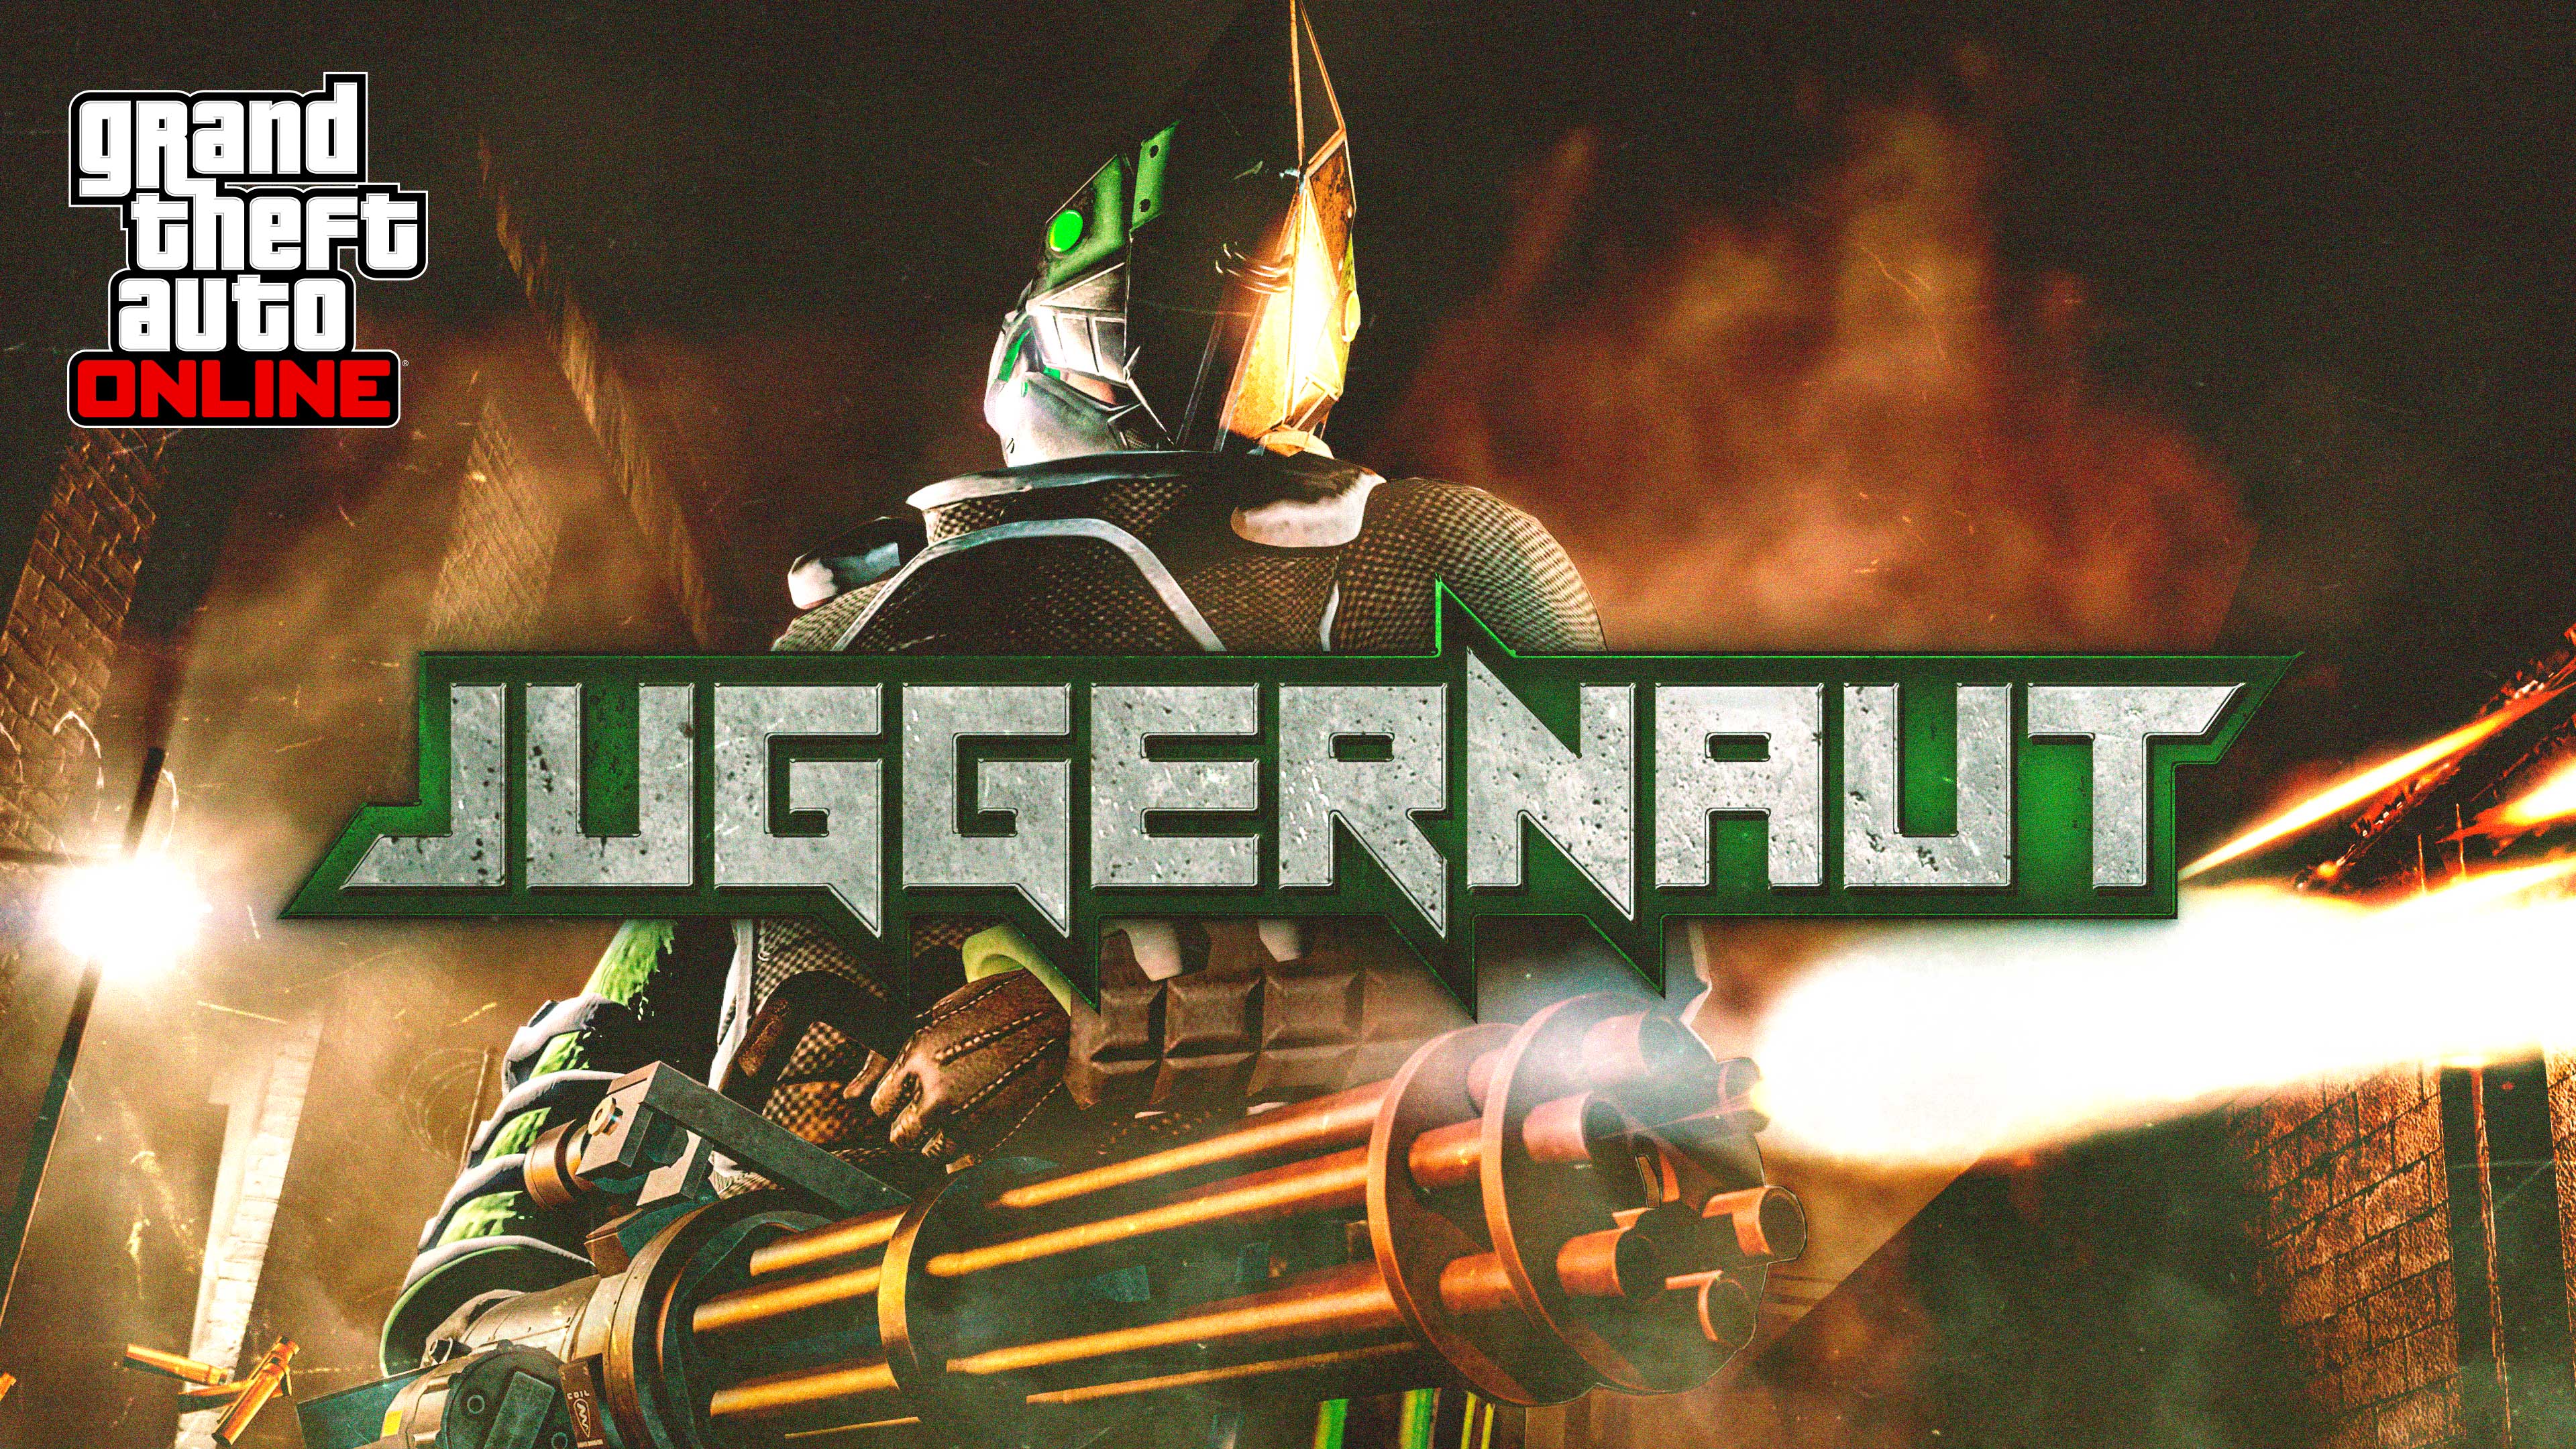 Pôster do evento de Juggernaut com personagem de armadura blindada com capacete pontudo disparando uma minigun.